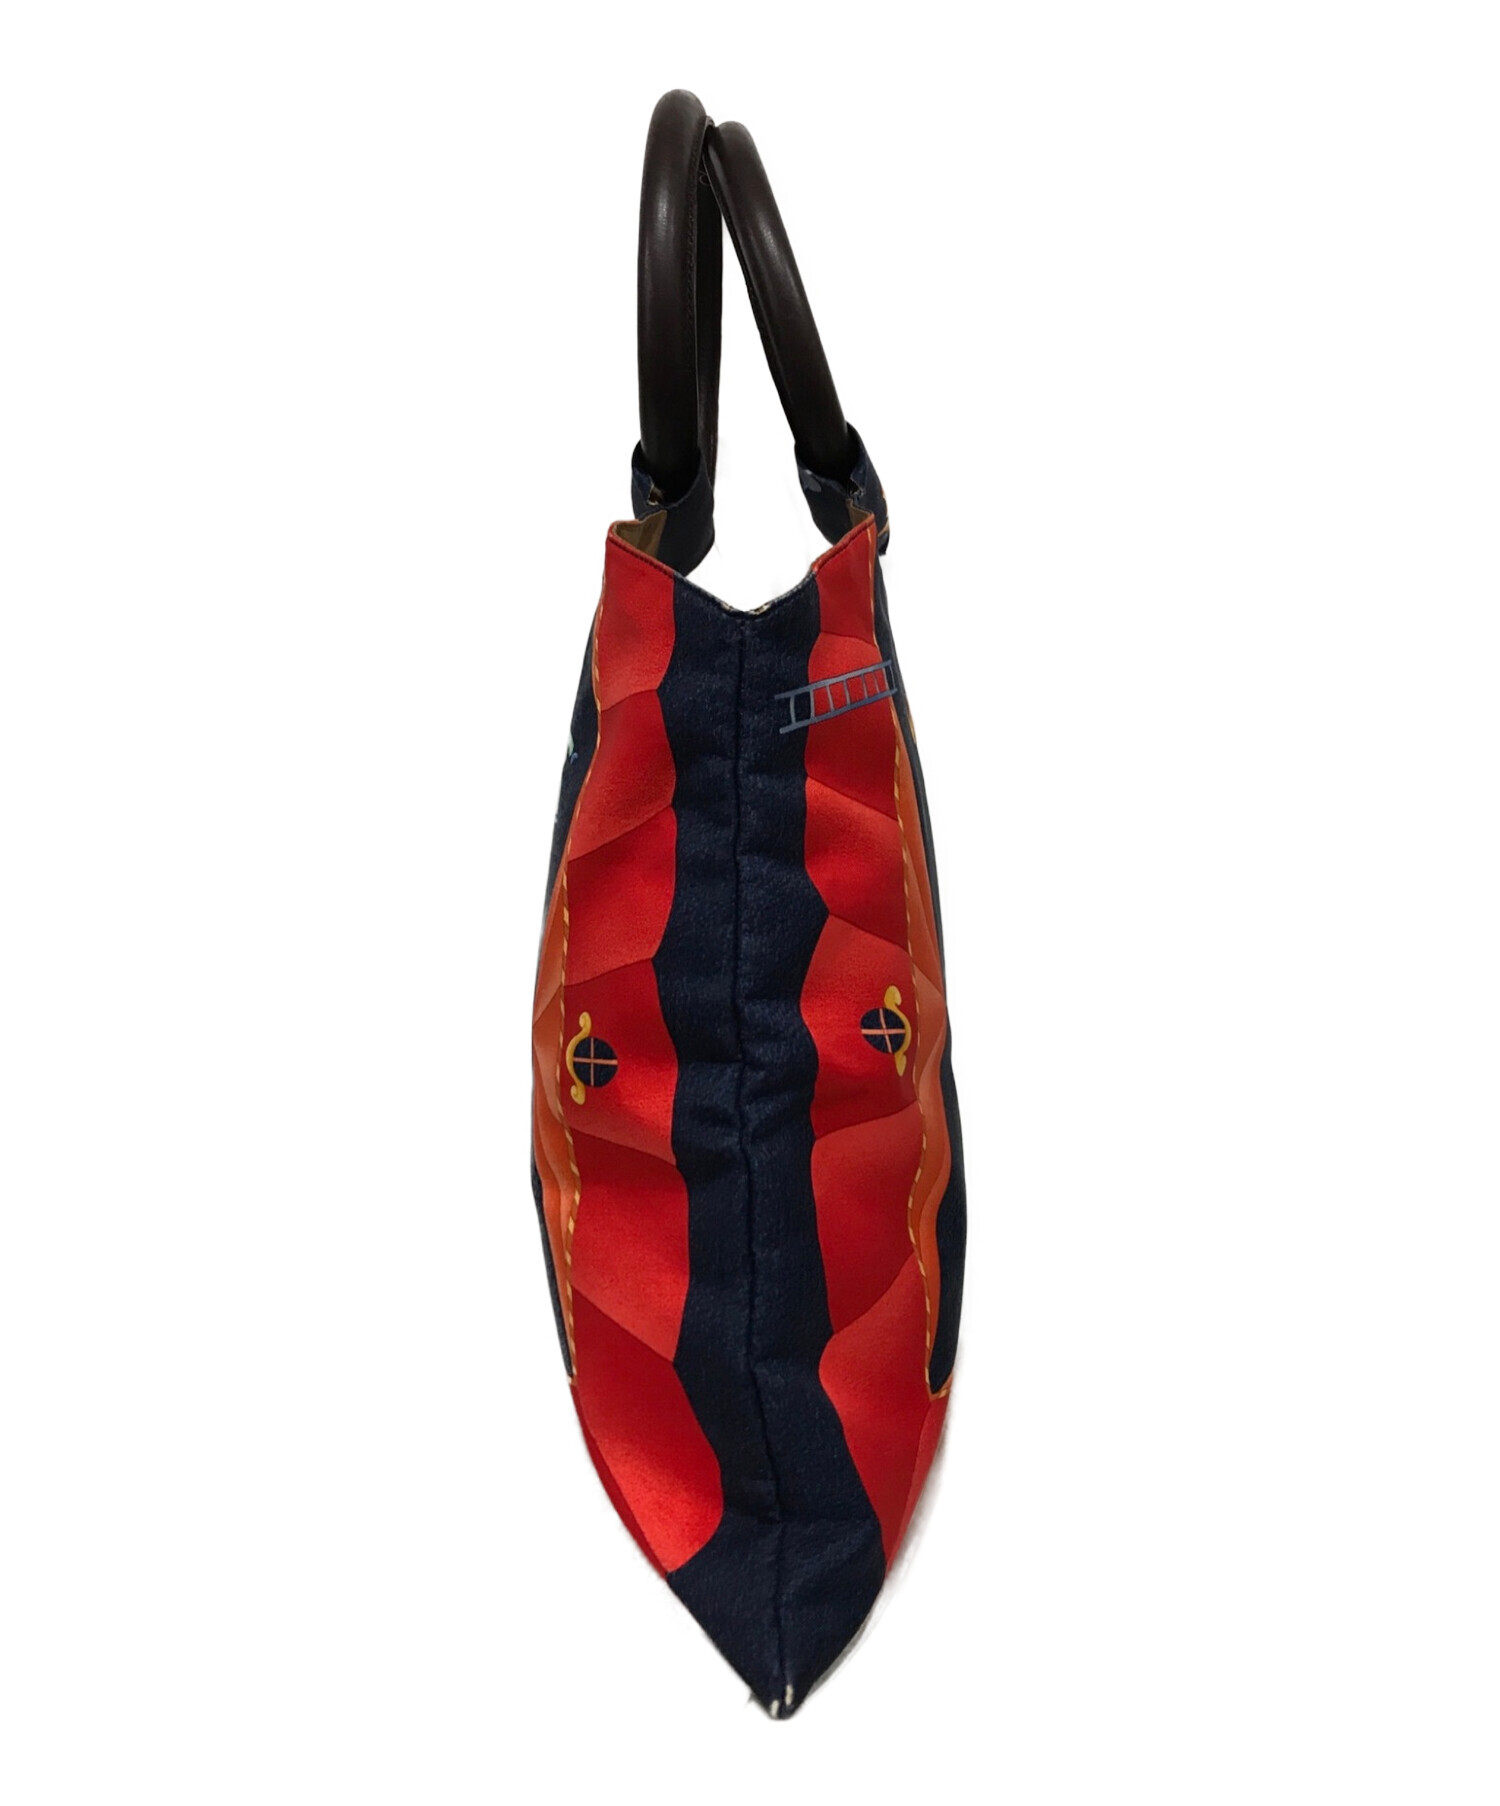 BVLGARI (ブルガリ) スカーフ柄リングハンドルバッグ